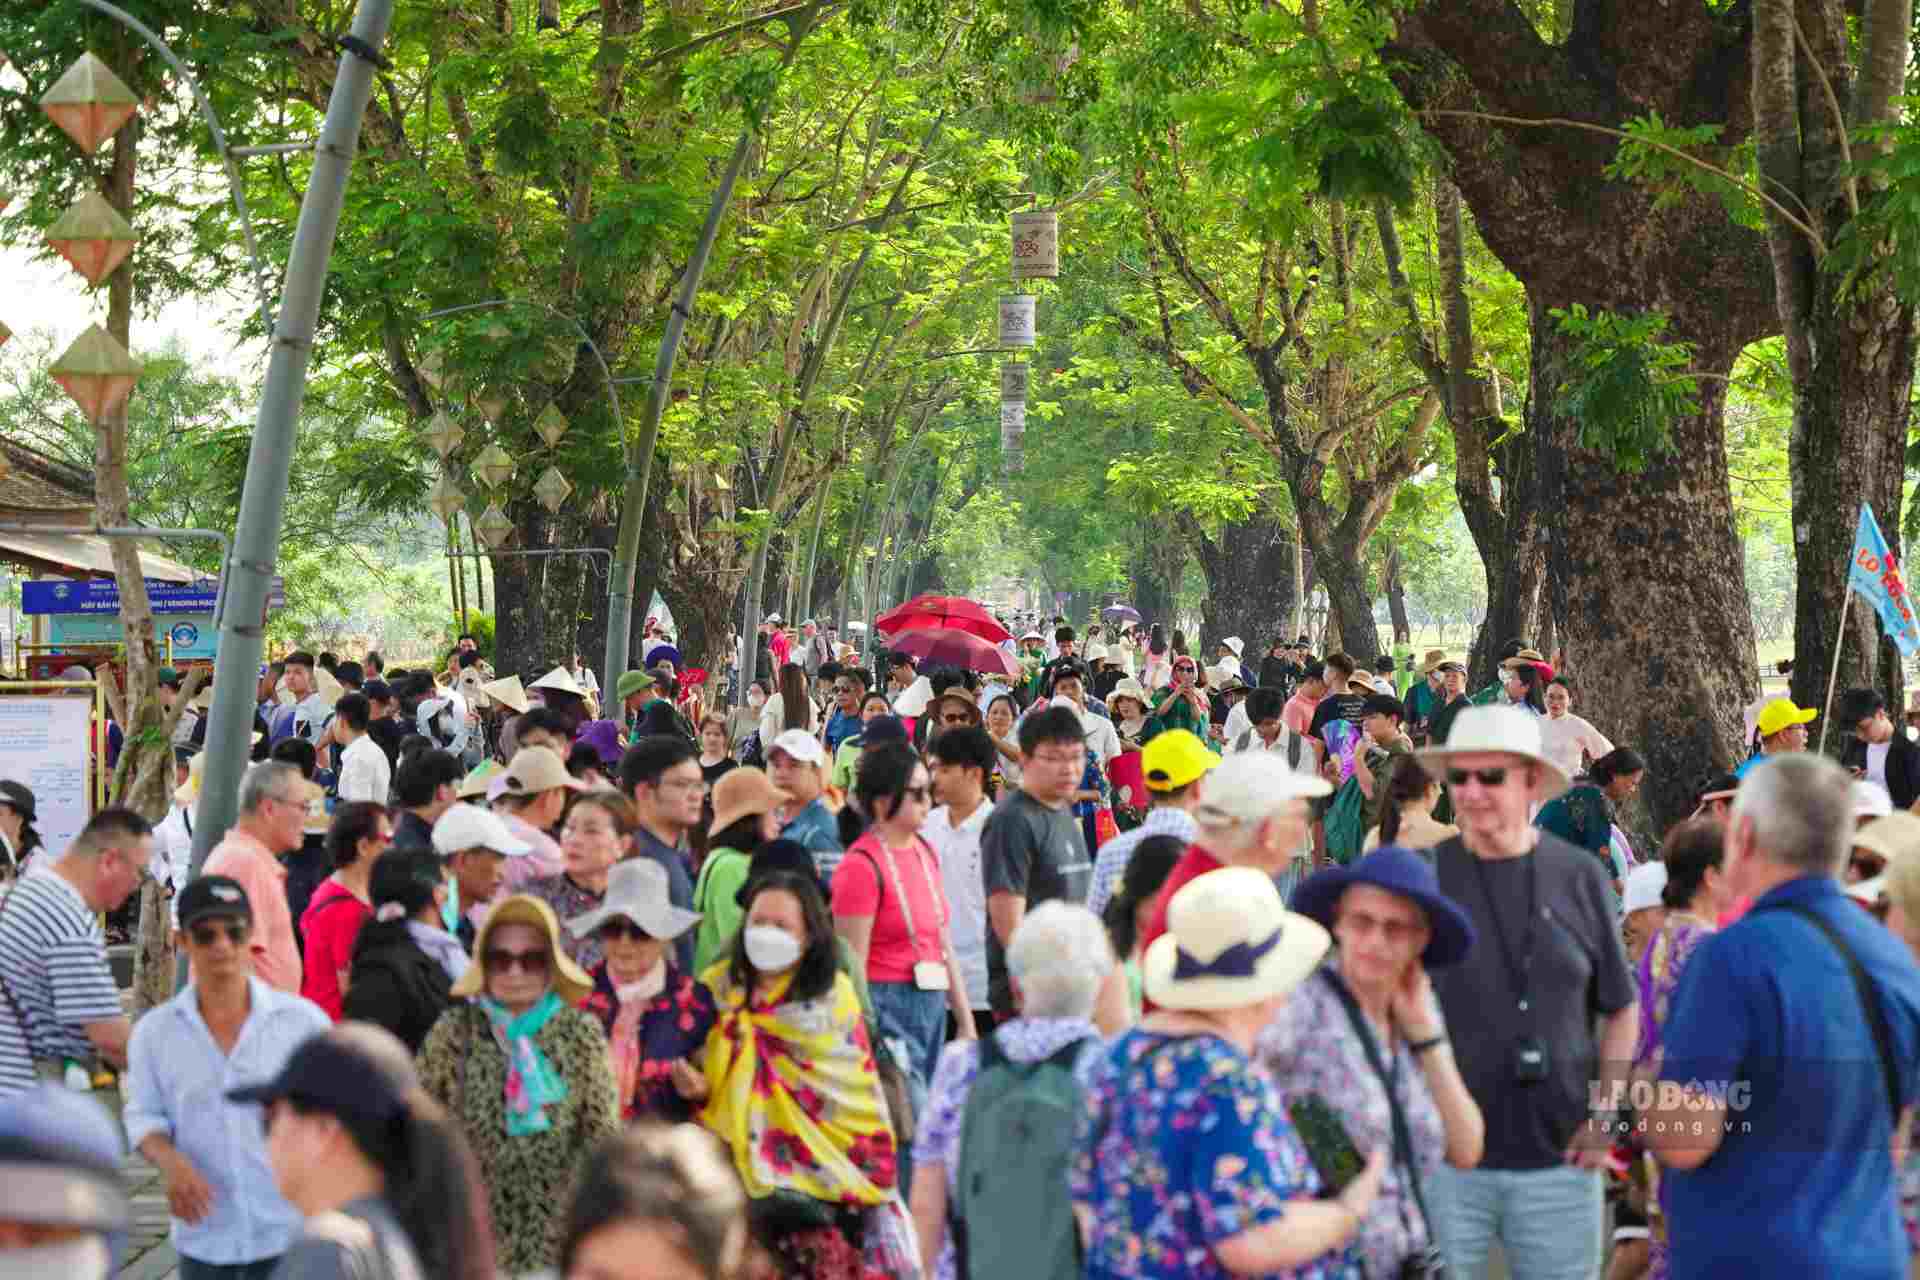 Ghi nhận của Lao Động trong ngày thứ hai của kỳ nghỉ lễ, mặc dù thời tiết ở Huế hiện tại đang nắng nóng gay gắt, mức nhiệt độ giao động từ 39 đến 42 độ C, tuy nhiên lượng khách tham quan khu vực Đại Nội Huế vẫn vô cùng đông. 